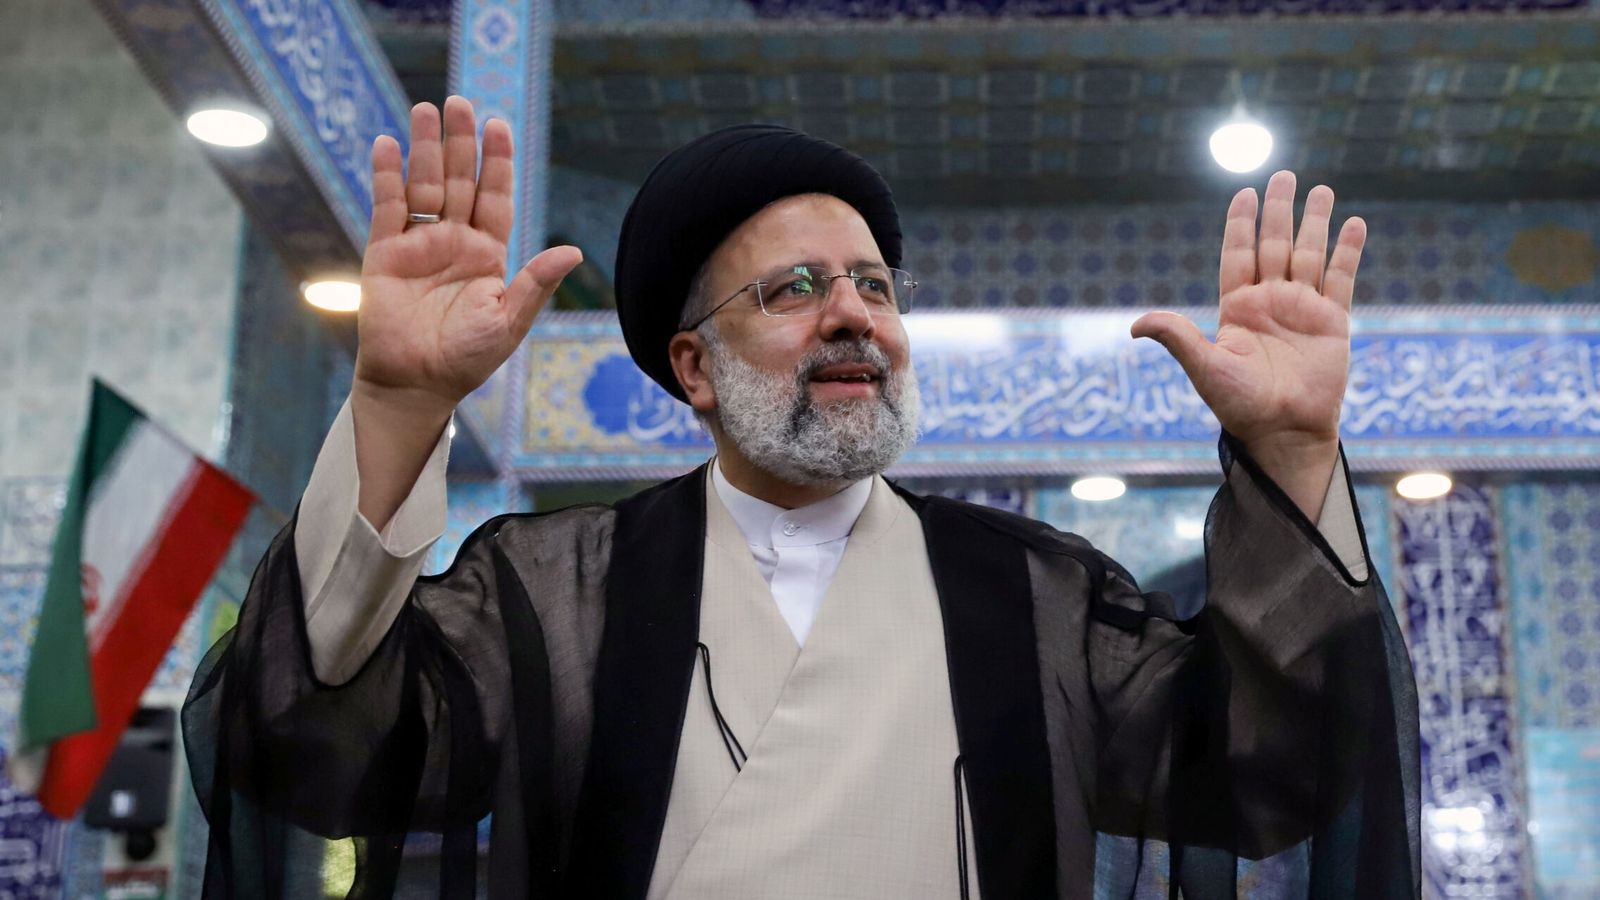 El candidato favorito para ganar las elecciones iraníes, Ebrahim Raisí. (Reuters)